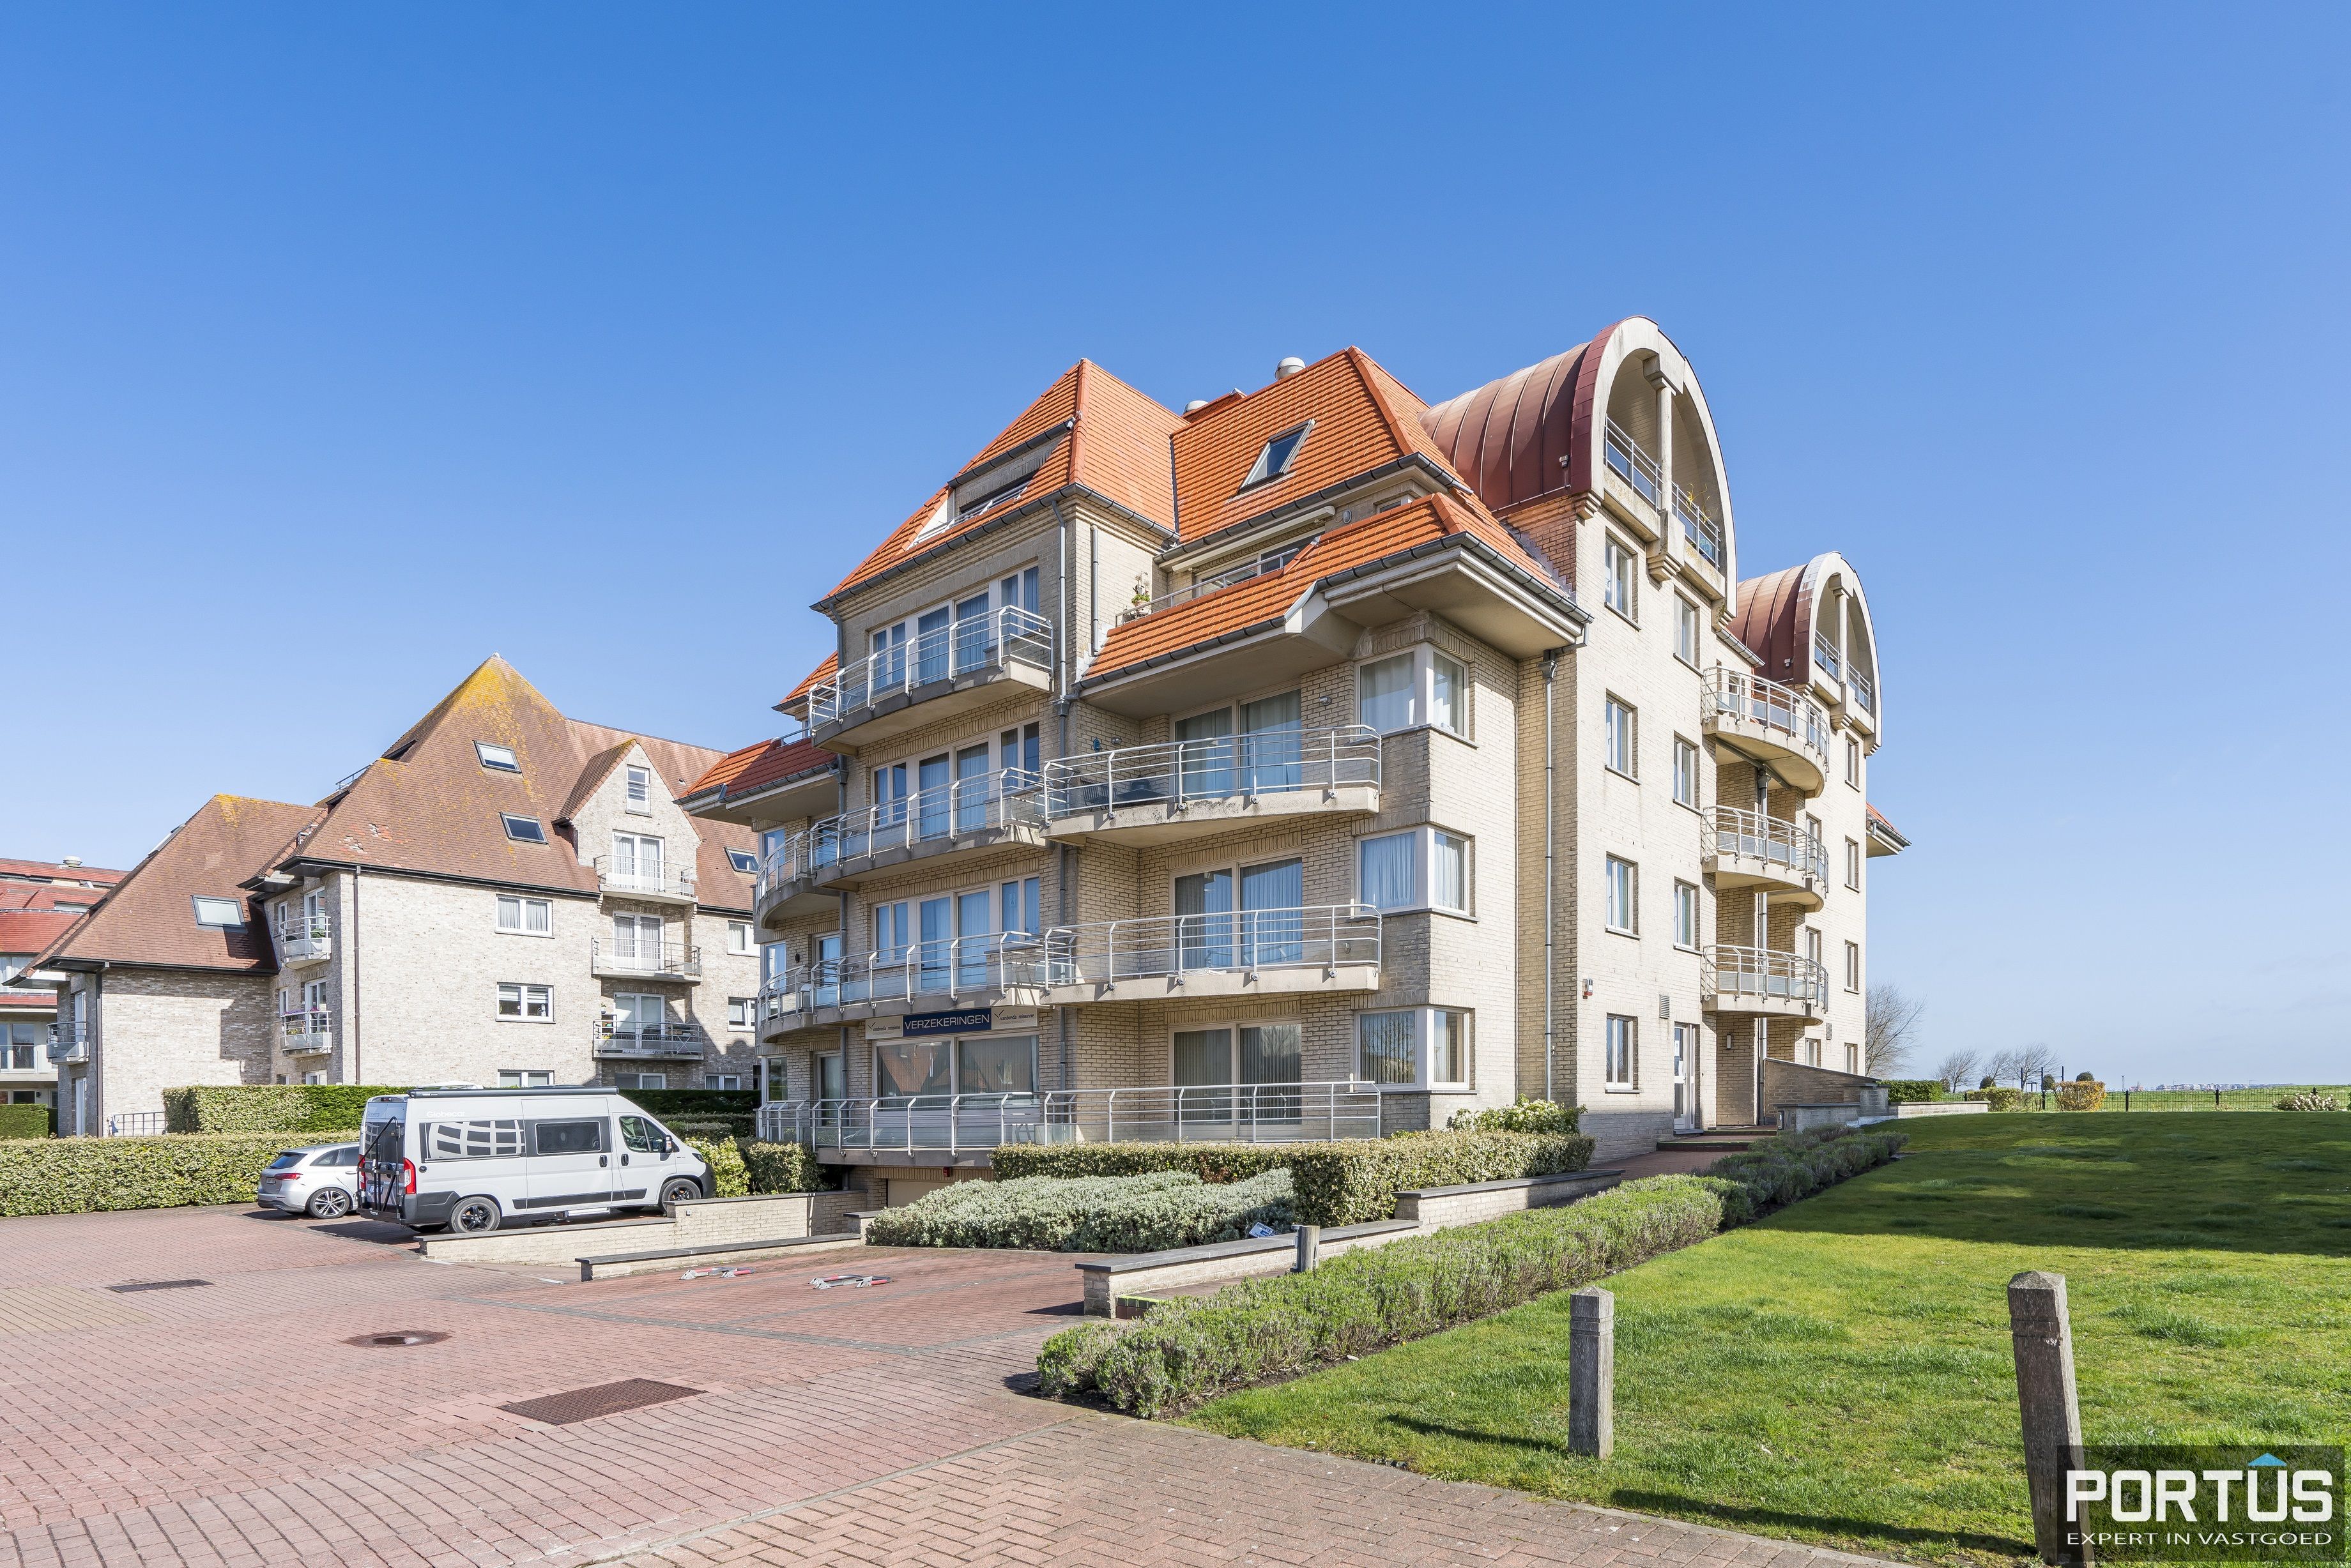 Appartement/Handelsgelijkvloers met terras te koop te Nieuwpoort - 17132